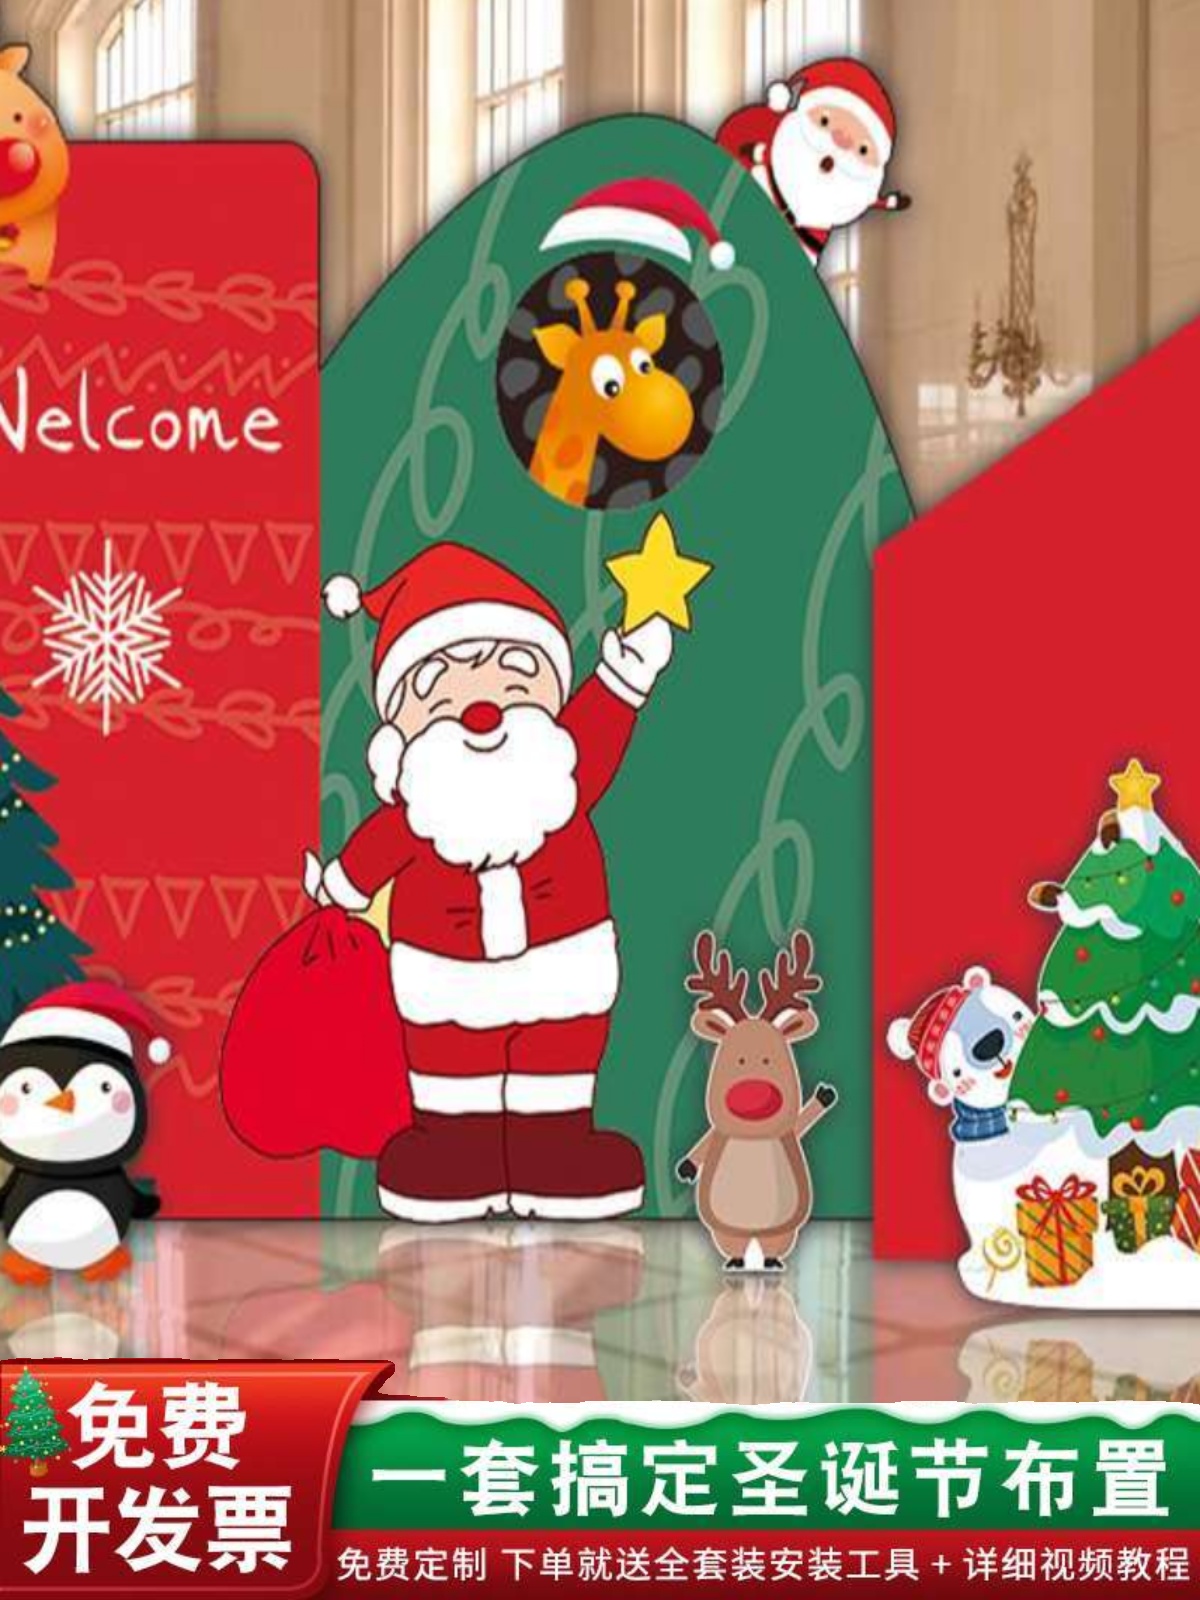 圣诞节气球场景布置幼儿园商场聖誕平安夜活动装饰拍照背景墙kt板